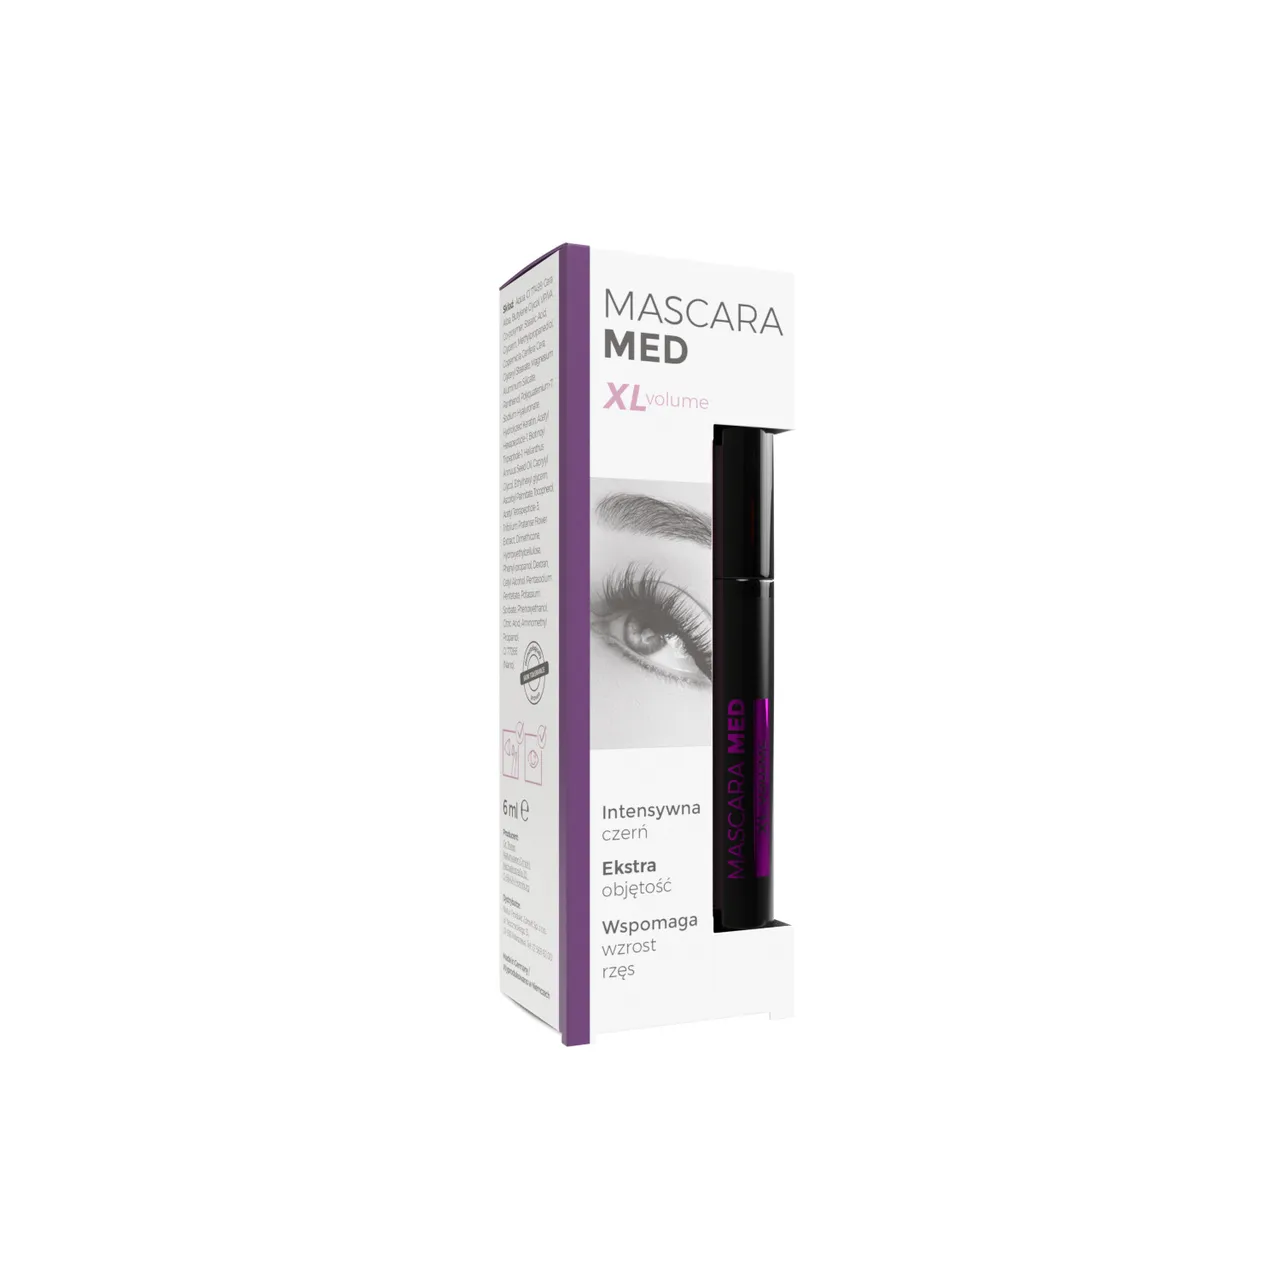 Mascara Med XL-Volume, tusz do rzęs, kolor czarny, 6 ml